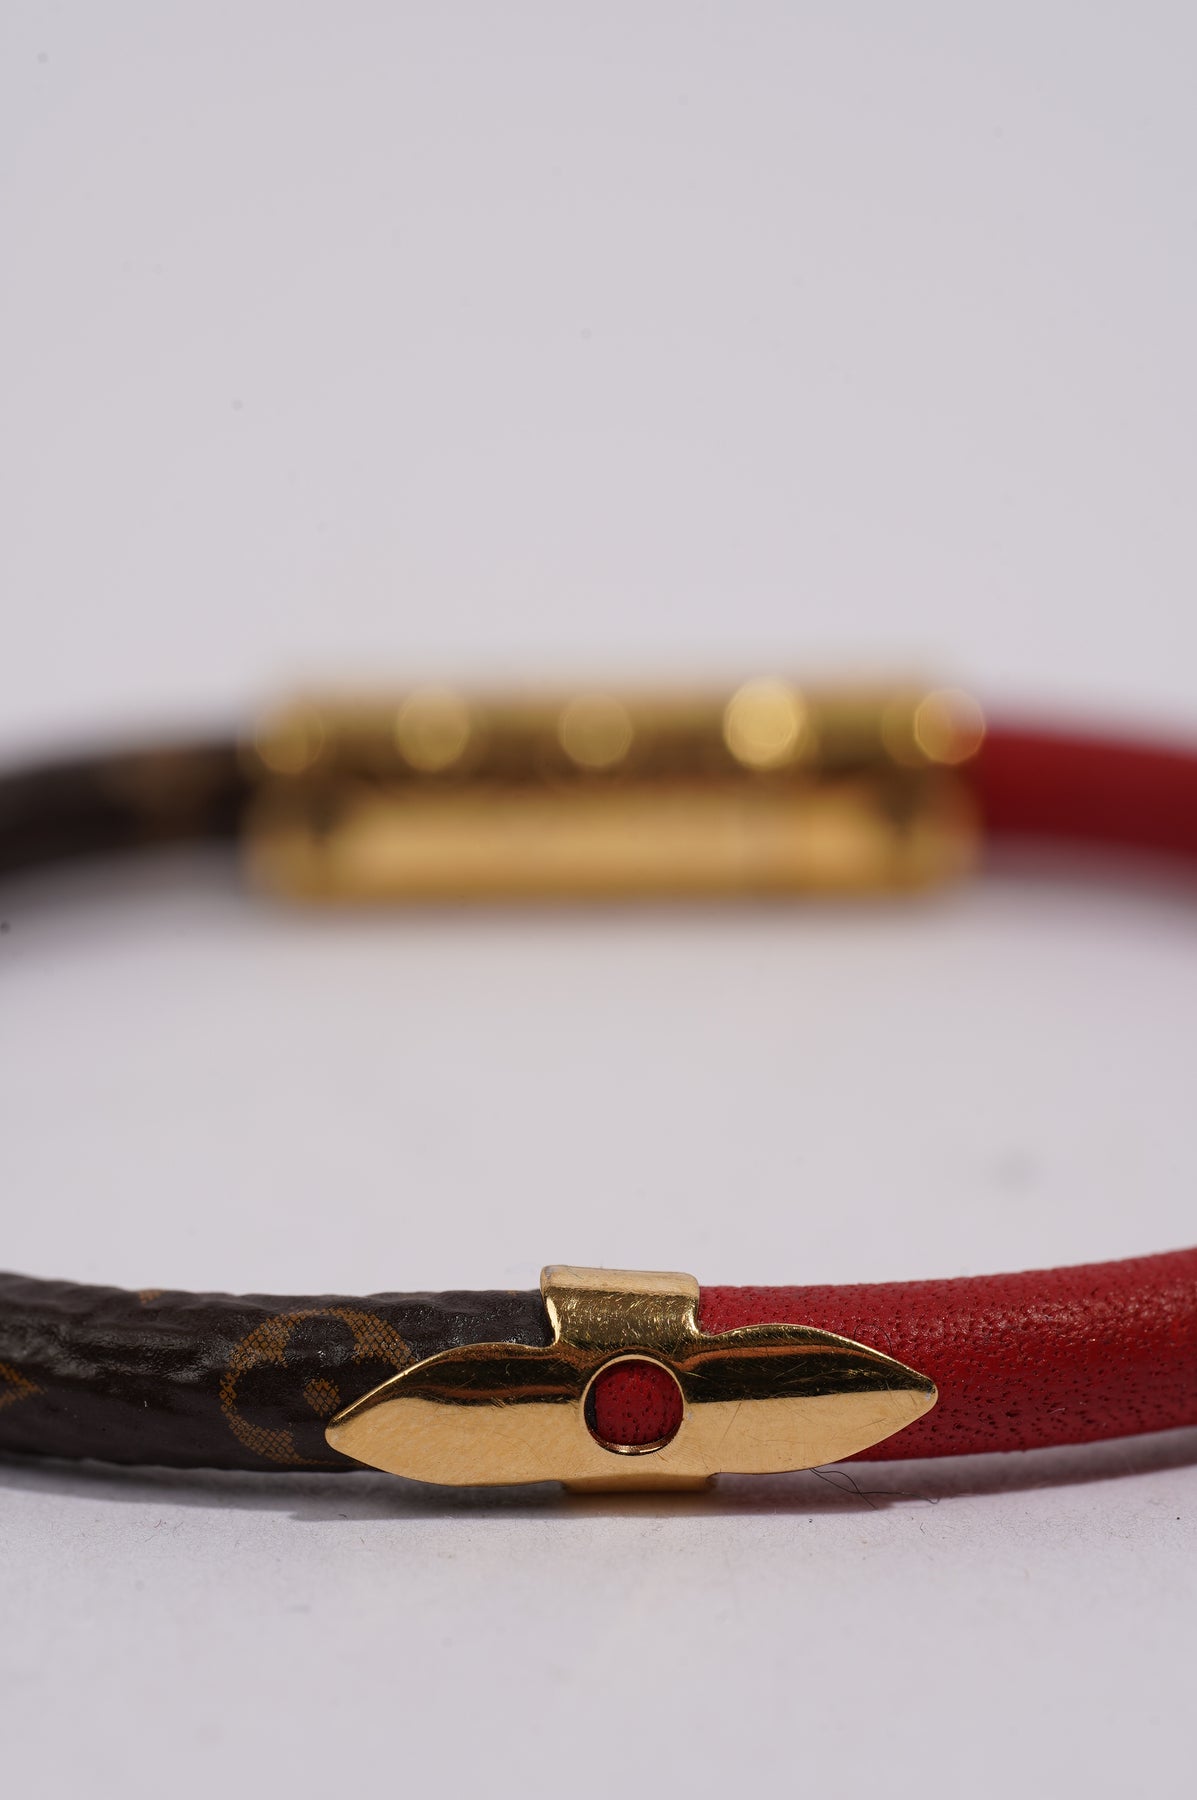 Sold at Auction: Louis Vuitton, LOUIS VUITTON bracelet LV CONFIDENTIAL,  length 17cm.